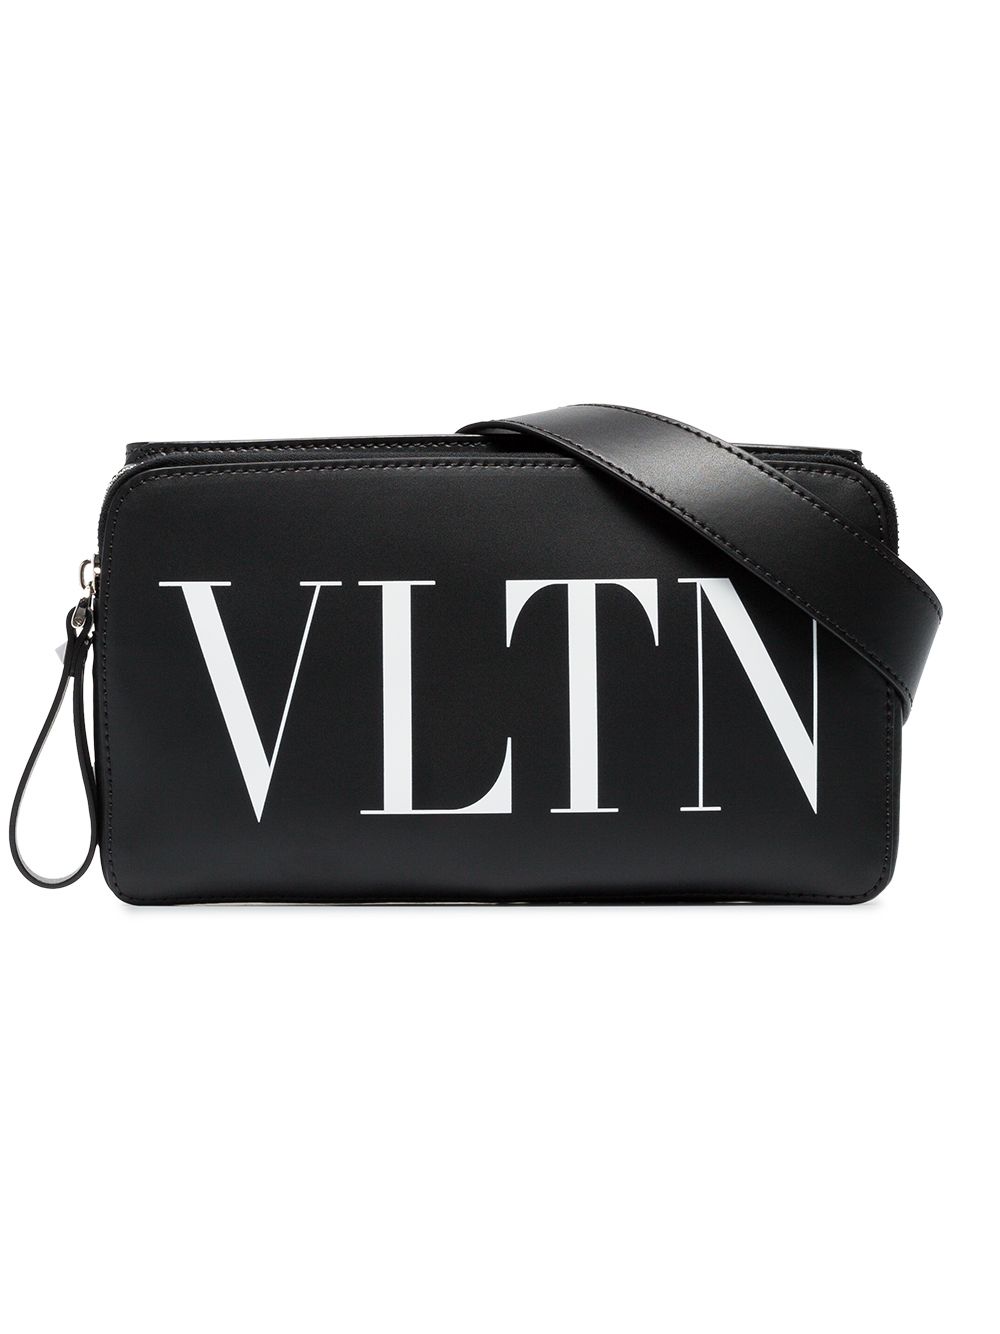 фото Valentino поясная сумка с принтом vltn